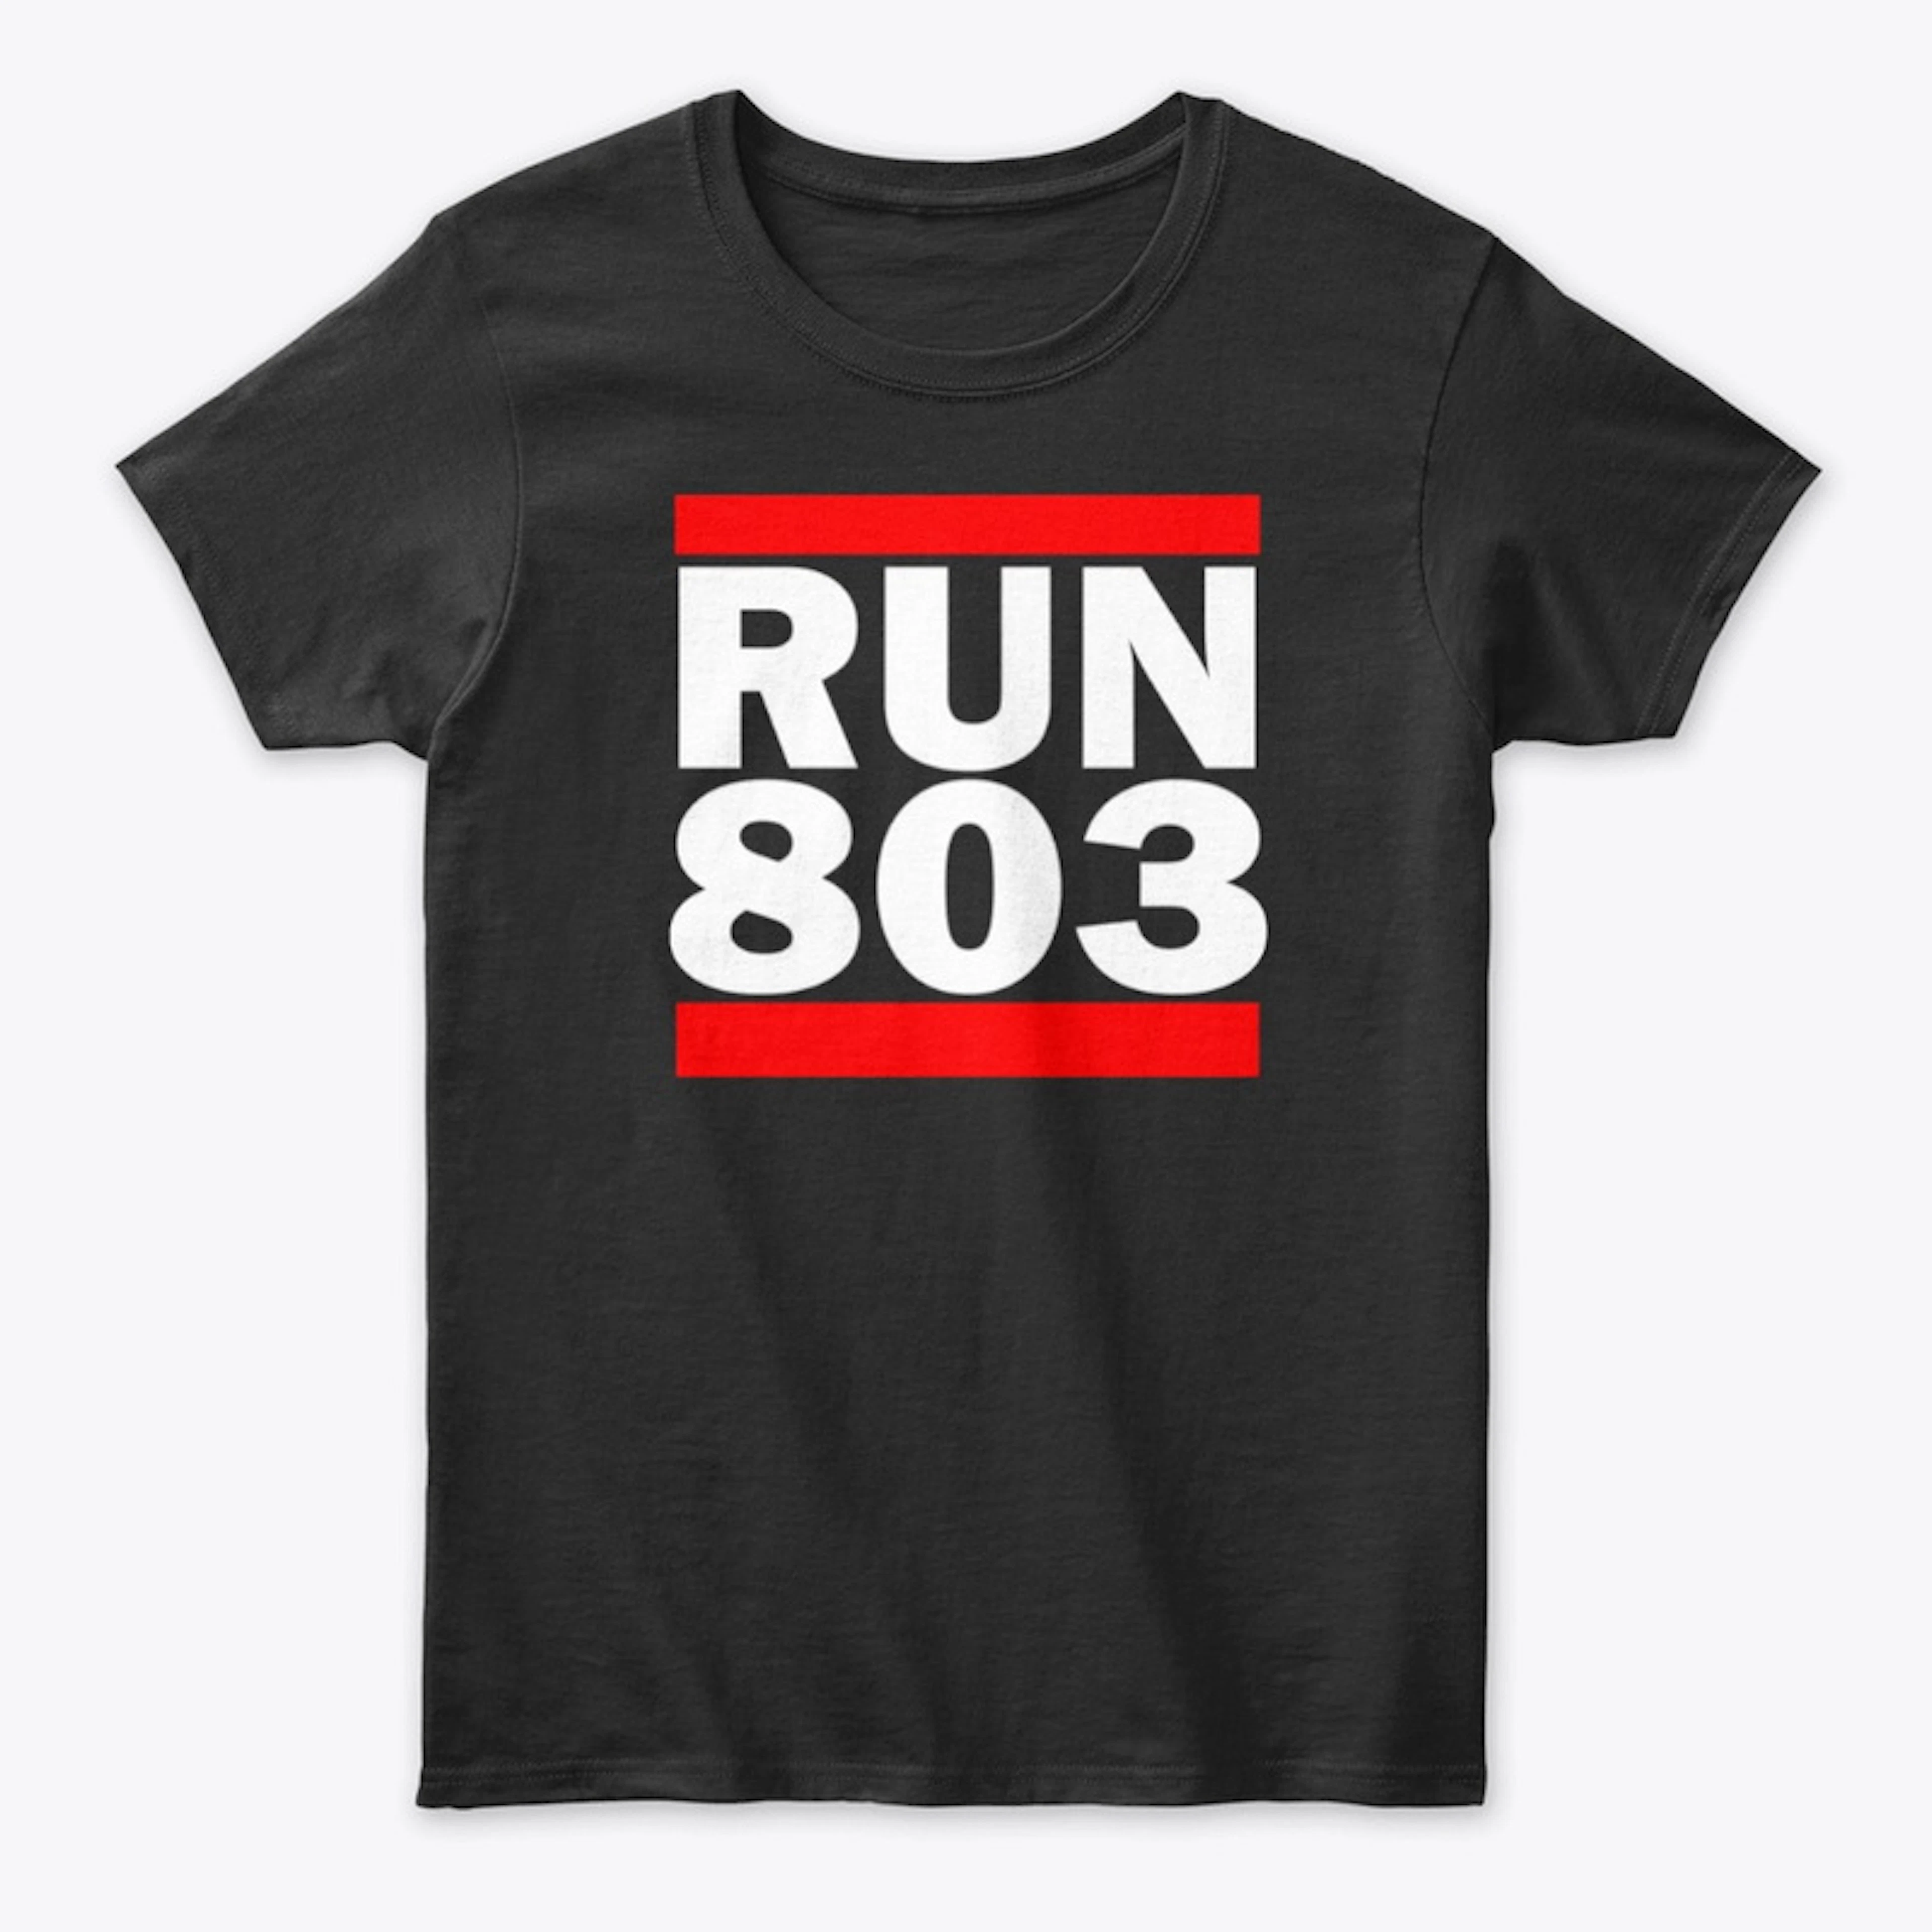 Run 803